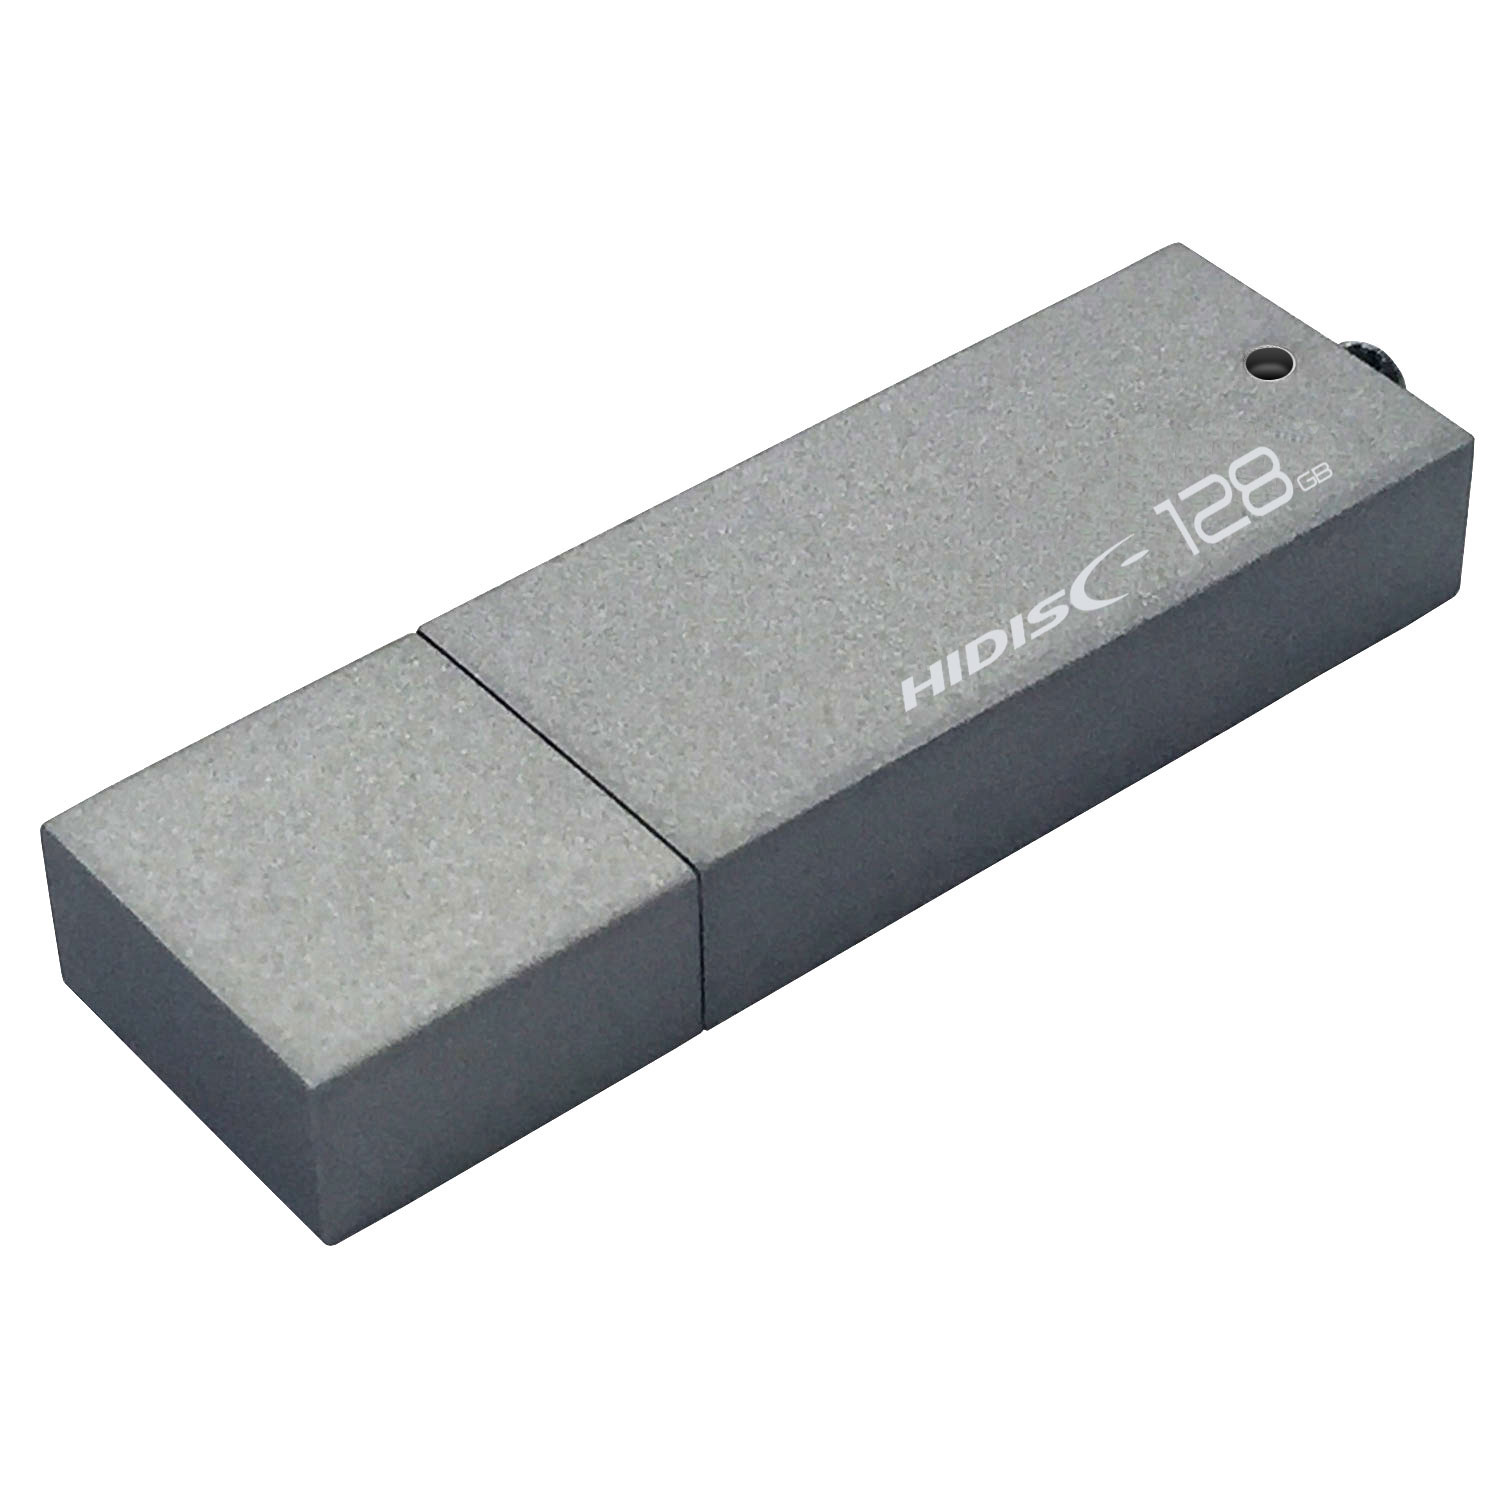 高速転送 HIDISC USB 3.0 フラッシュドライブ 512GB シルバー キャップ 